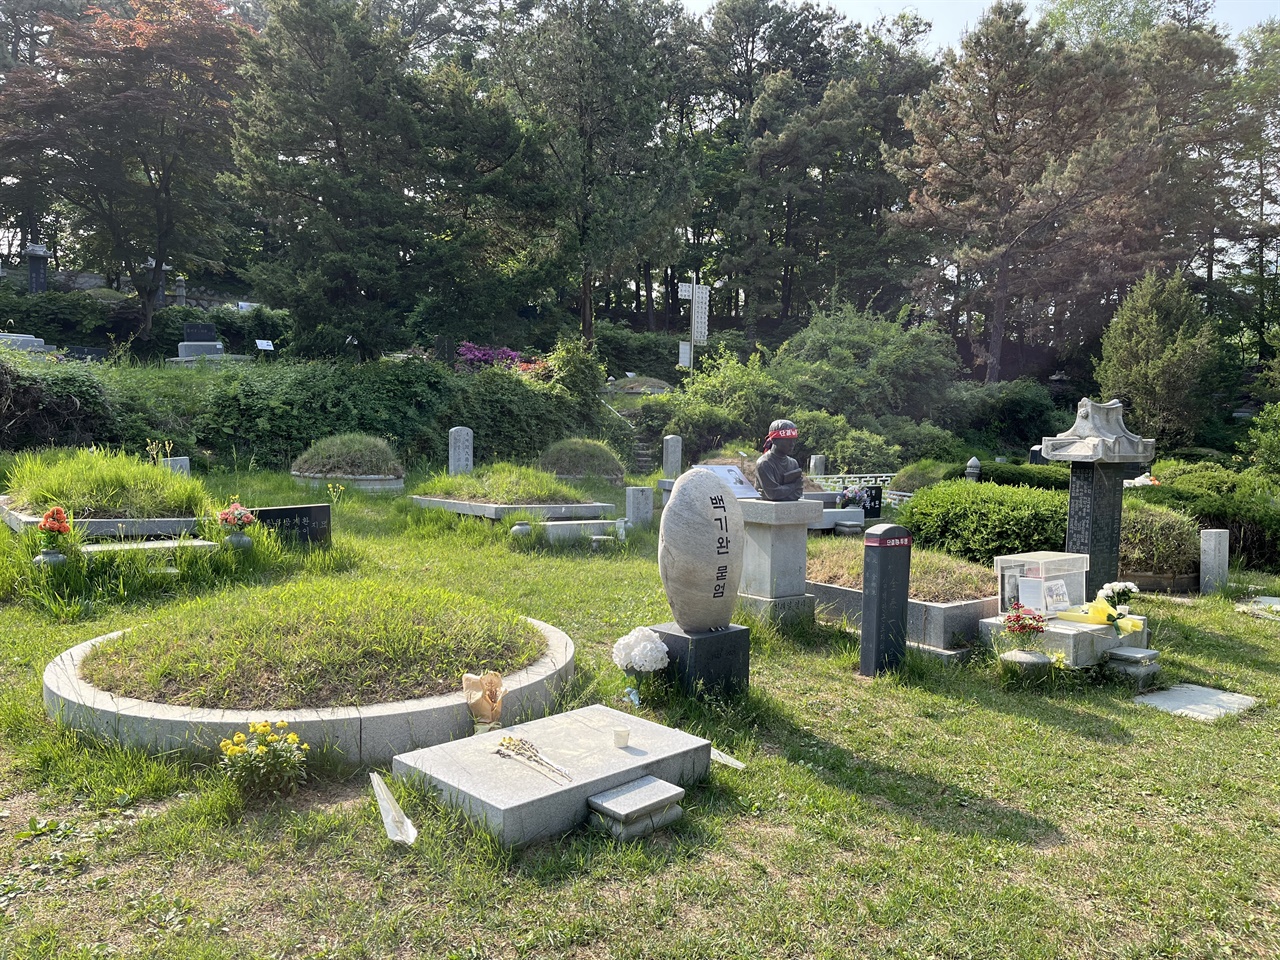 민주열사 묘역의 중앙에는 전태일 열사와 이소선 어머님, 백기완 선생과 김용균 노동자의 묘소가 마치 이웃사촌처럼 오손도손 모여 있다.